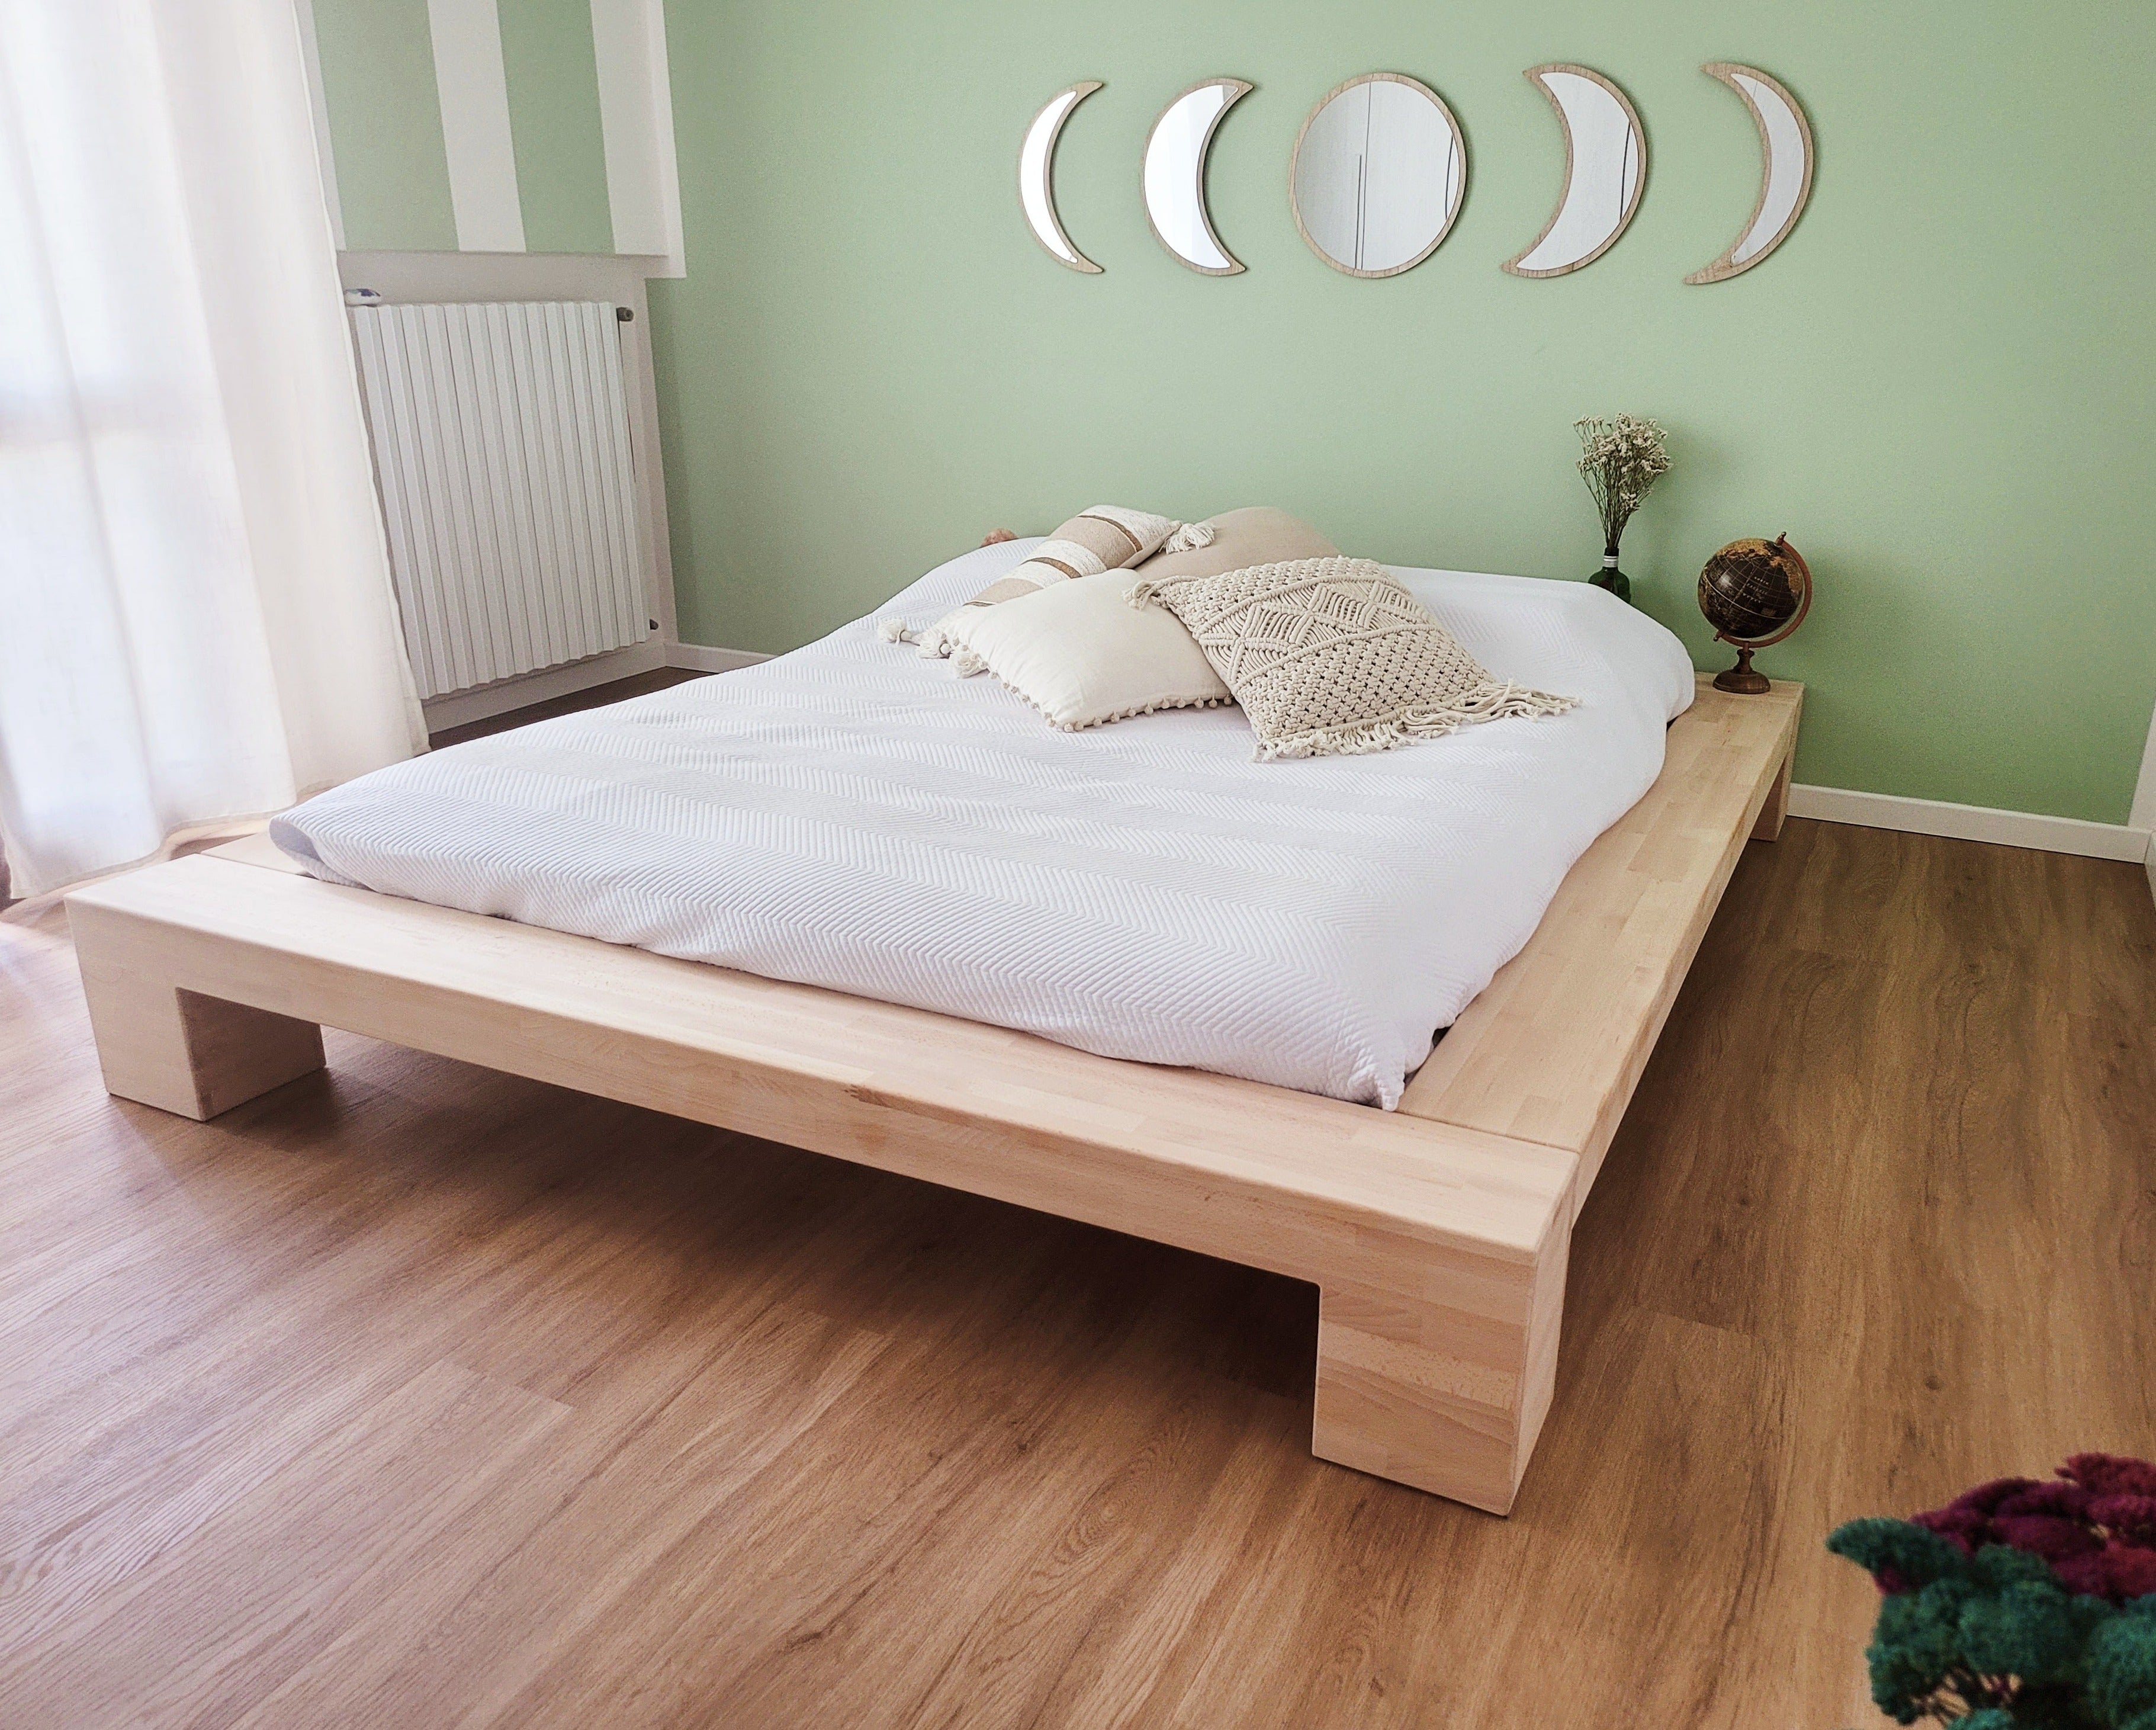 Perchè scegliere una struttura letto in legno?